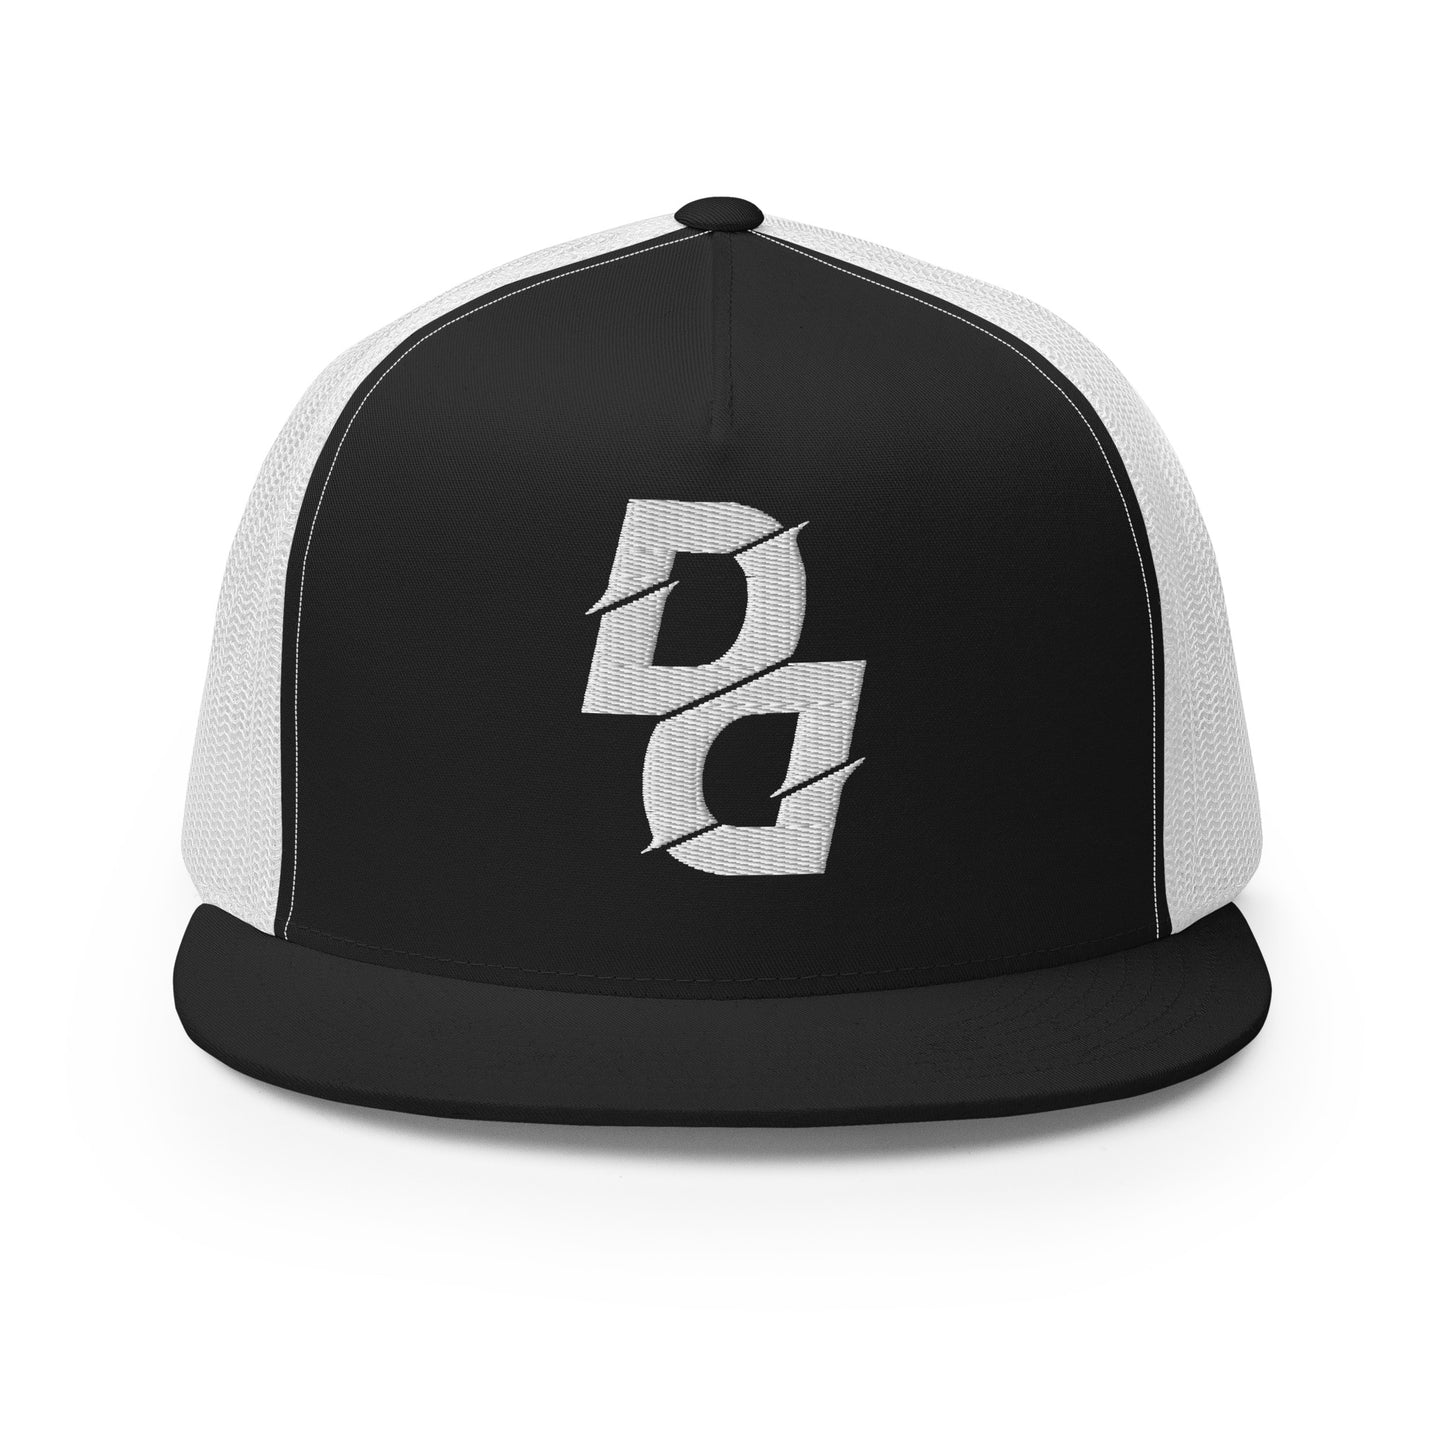 Demari Davis "DD" Trucker Cap